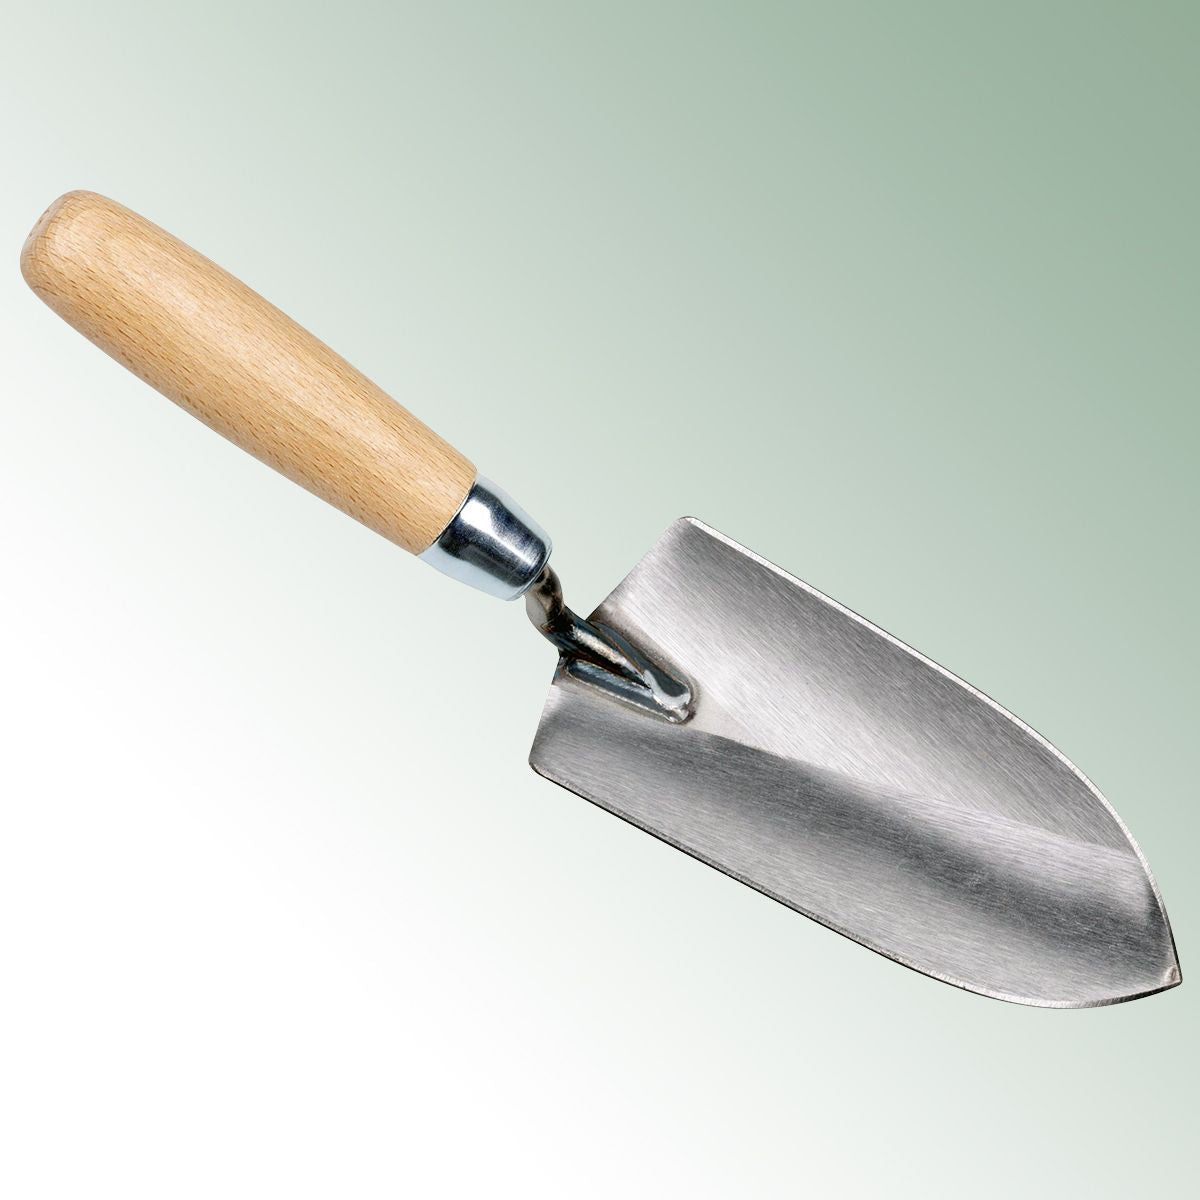 Trowel 7.0 cm with wooden handle